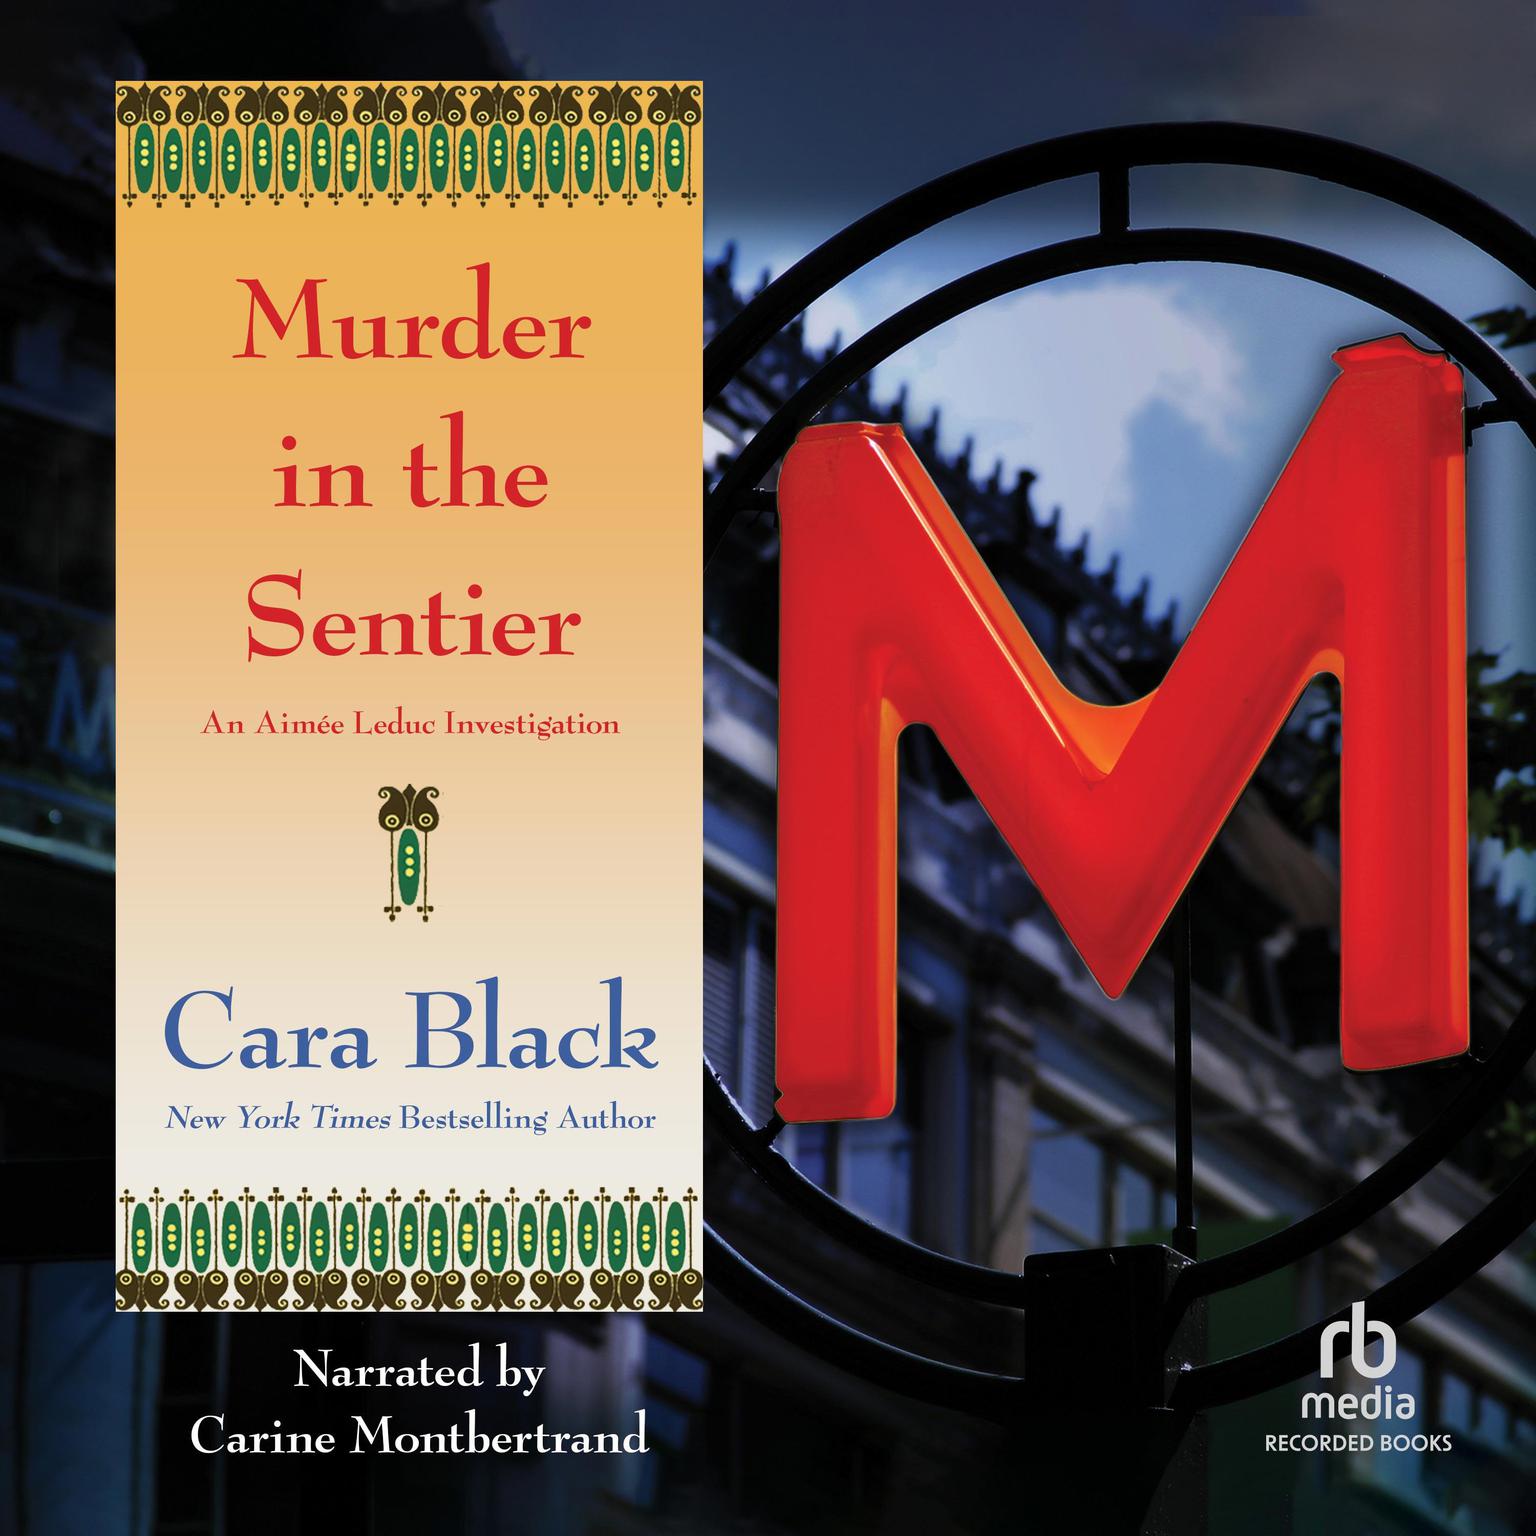 Murder in the Sentier Audiobook, by Cara Black